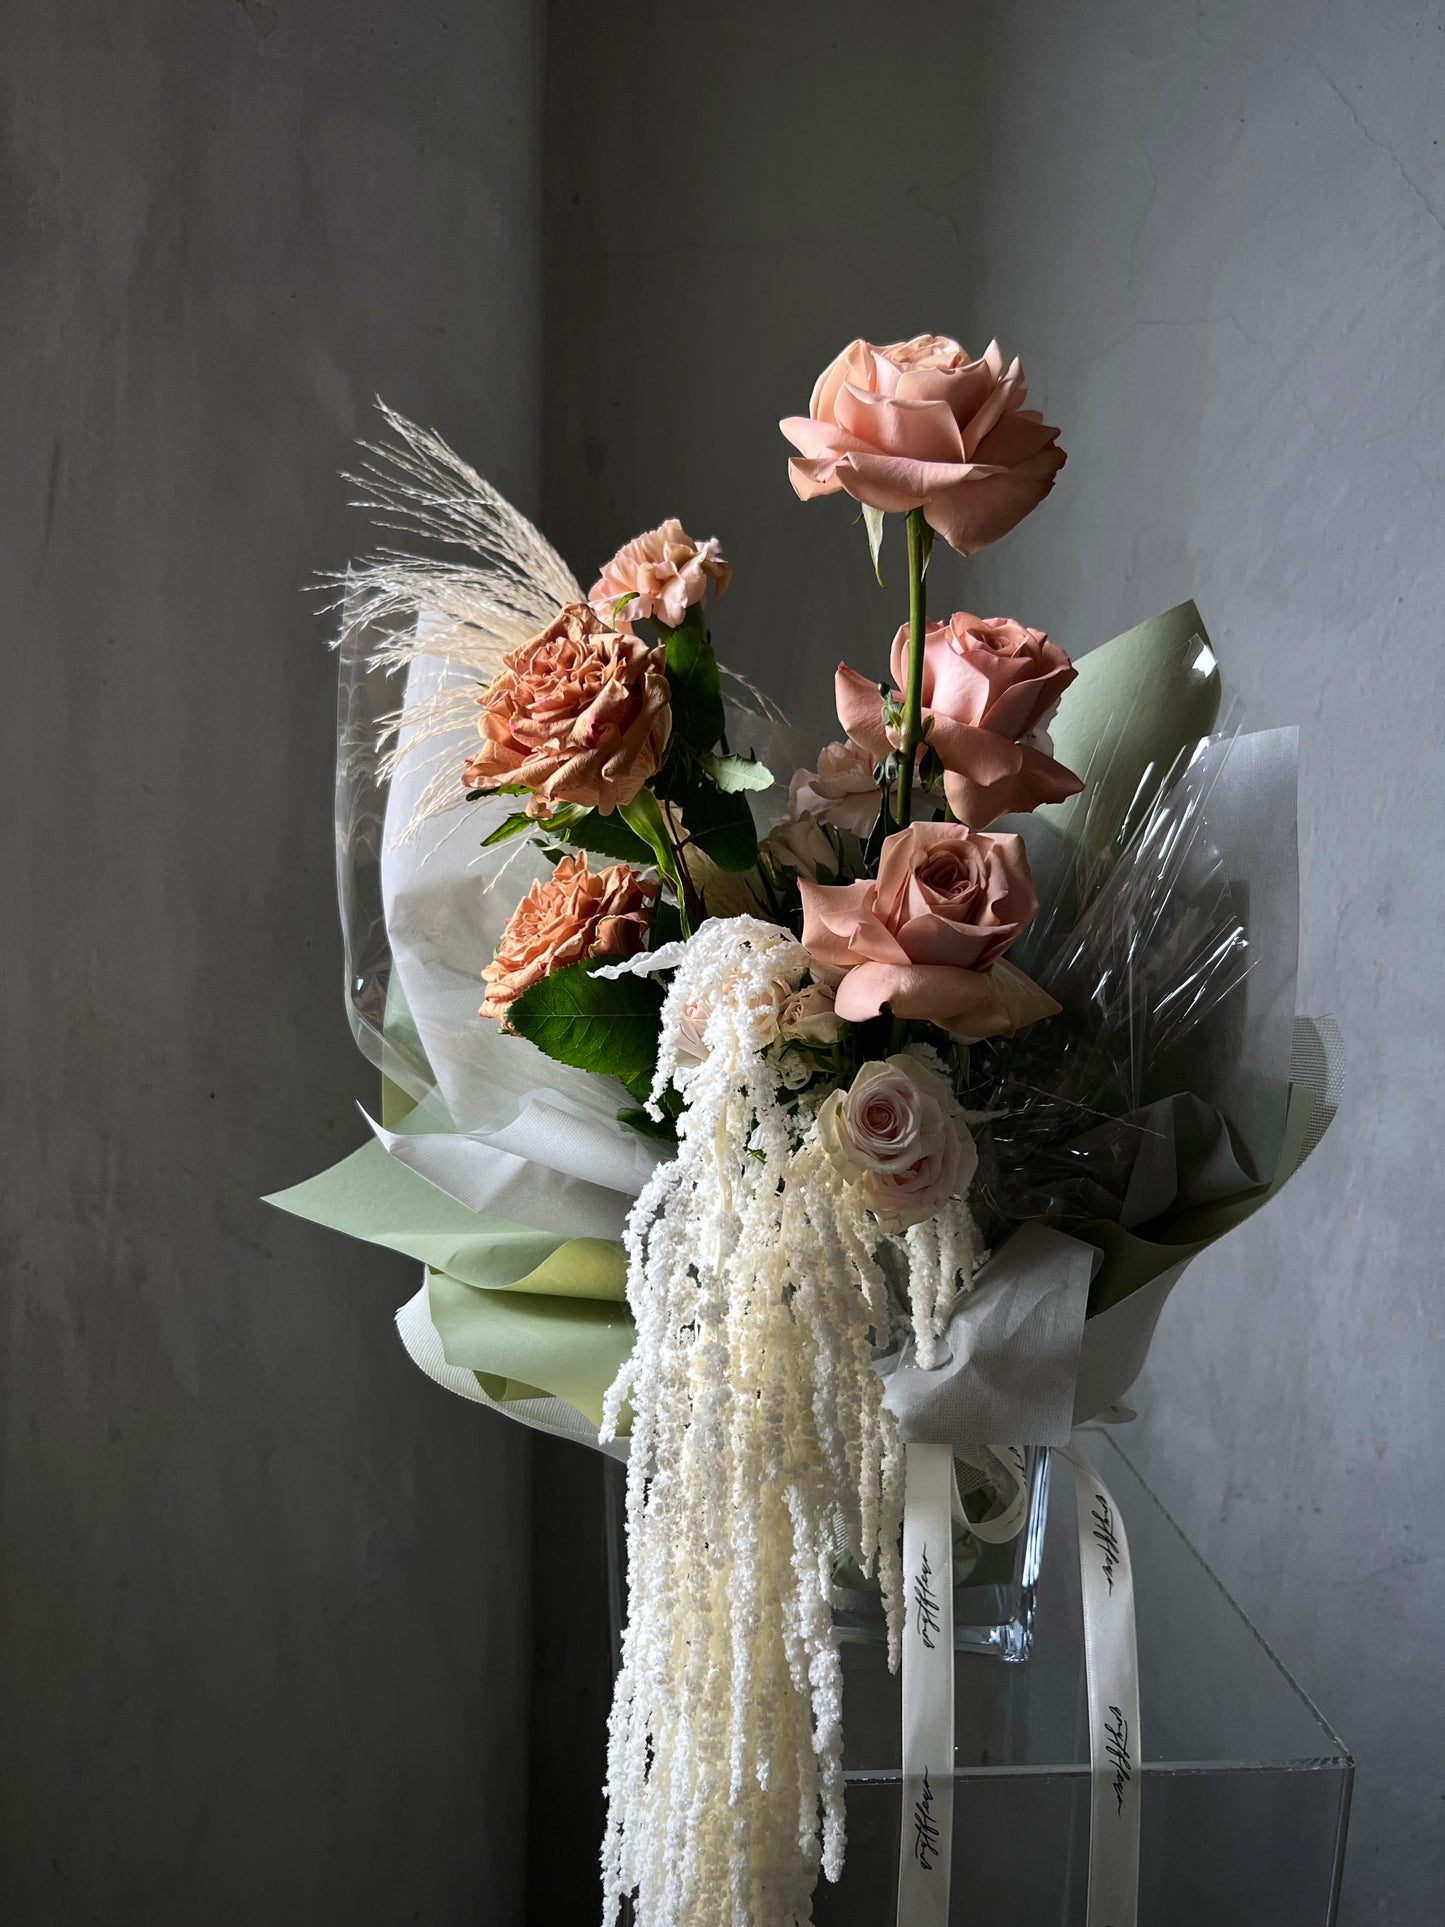 Rose Flower Arrangement | Rose Flower Bouquet | amytfleur